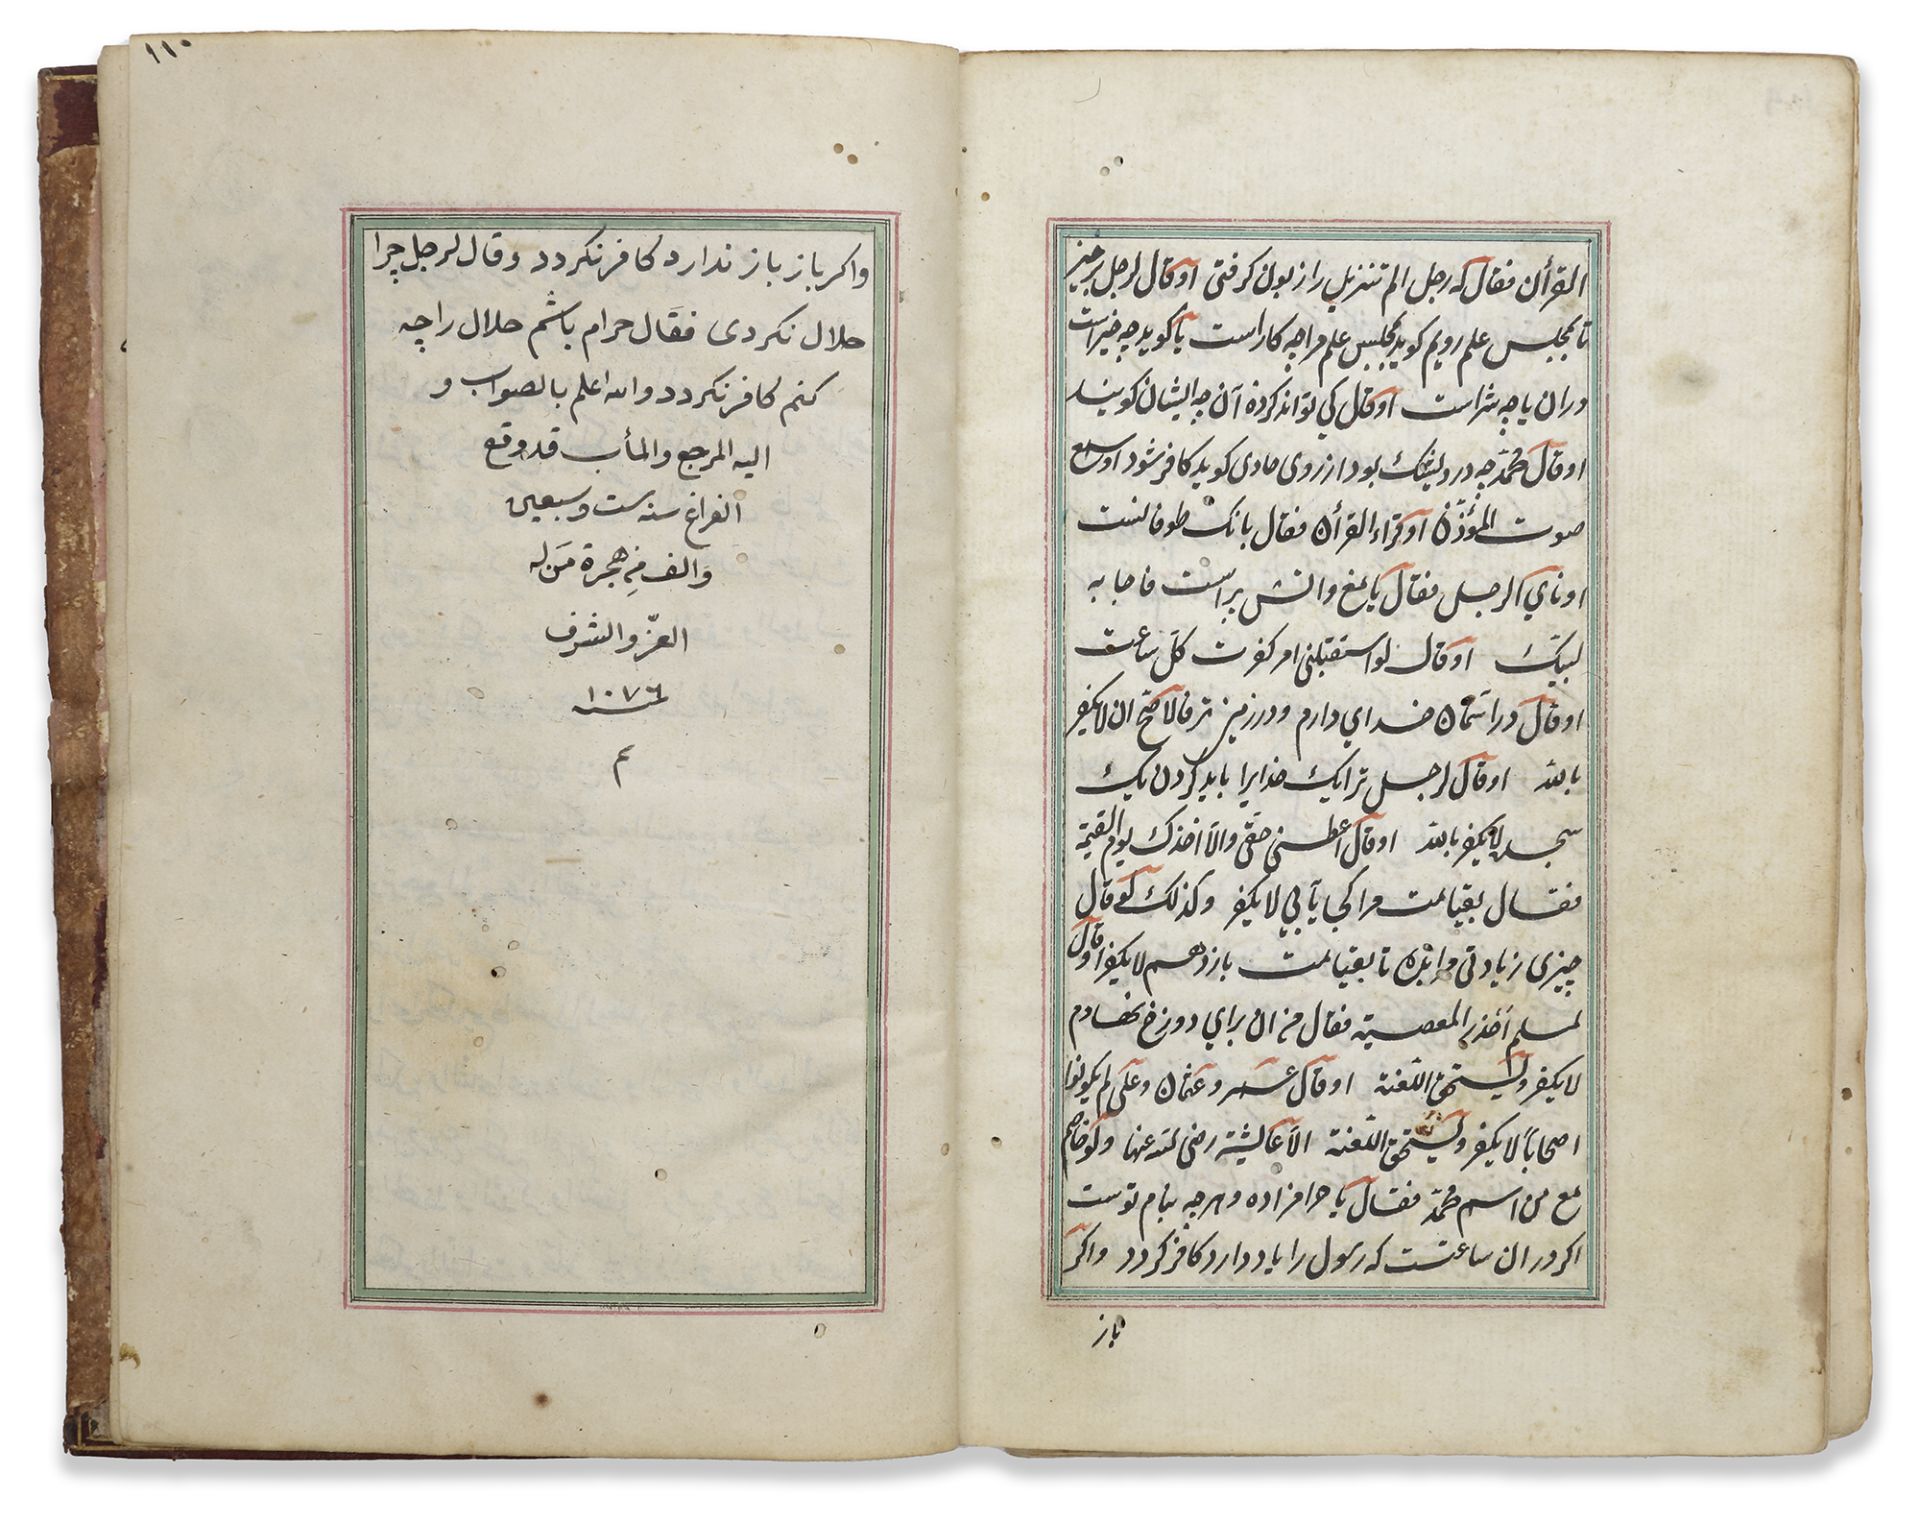 KHIZANAT AL-FIQH BY NASR IBN MUHAMMAD ABU AL-LAYTH AL-SAMARQANDI COPIED 1076 AH/1665 AD - Image 5 of 7